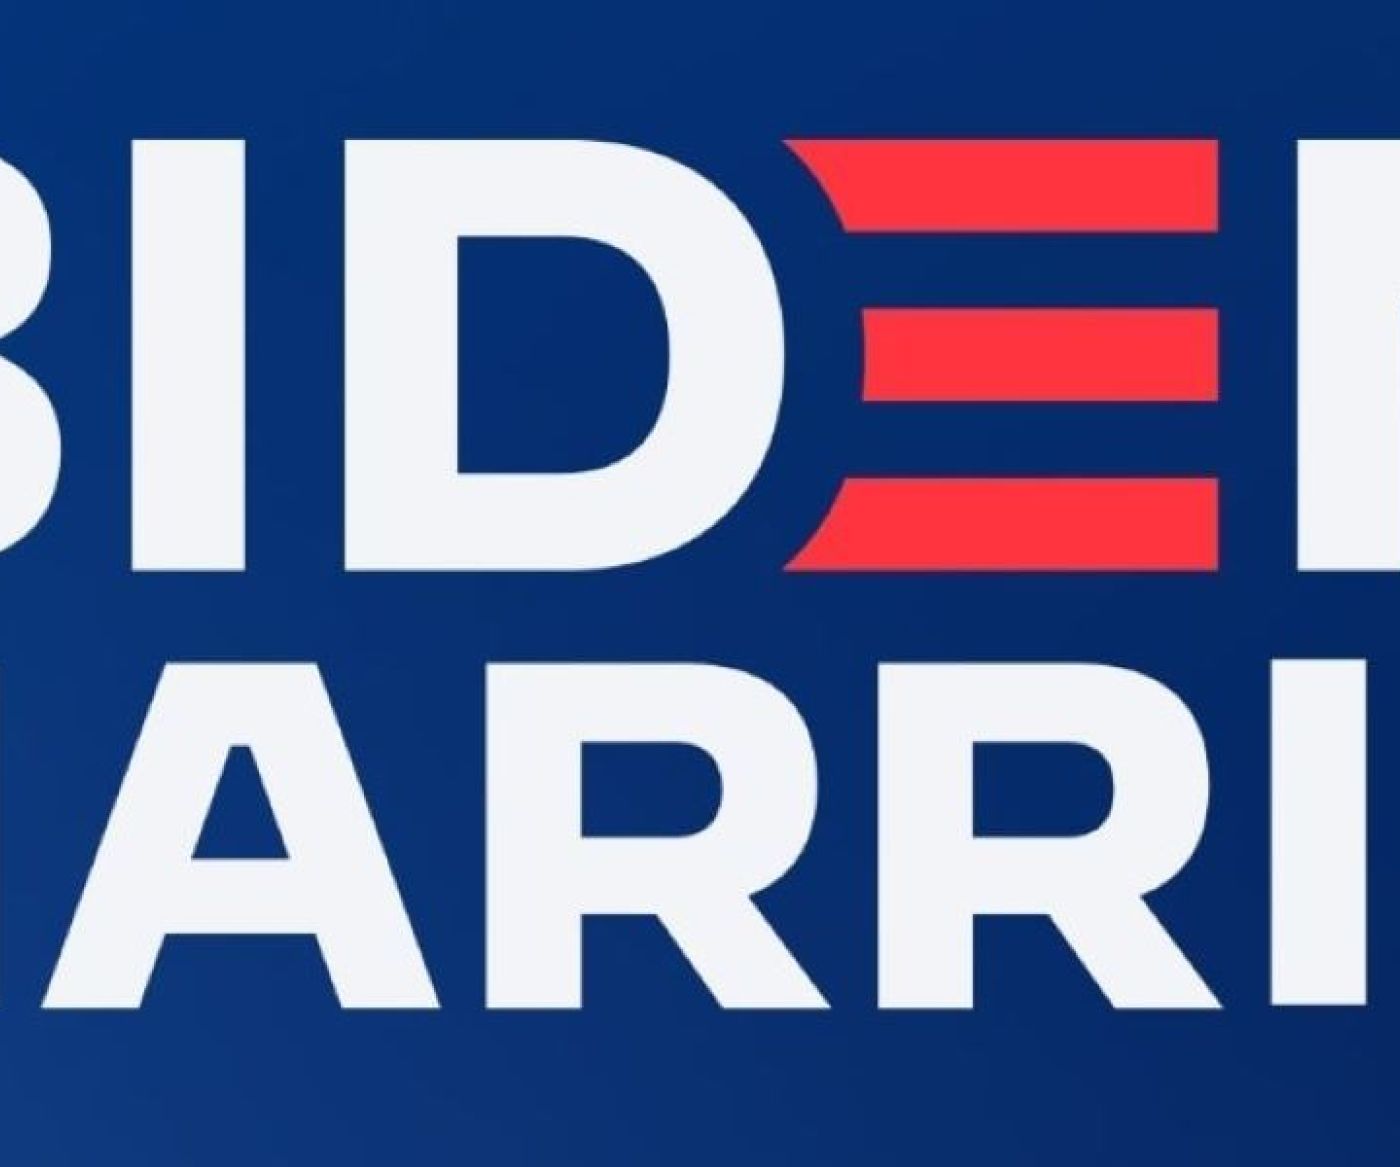 Biden Harris campaign logo 2020